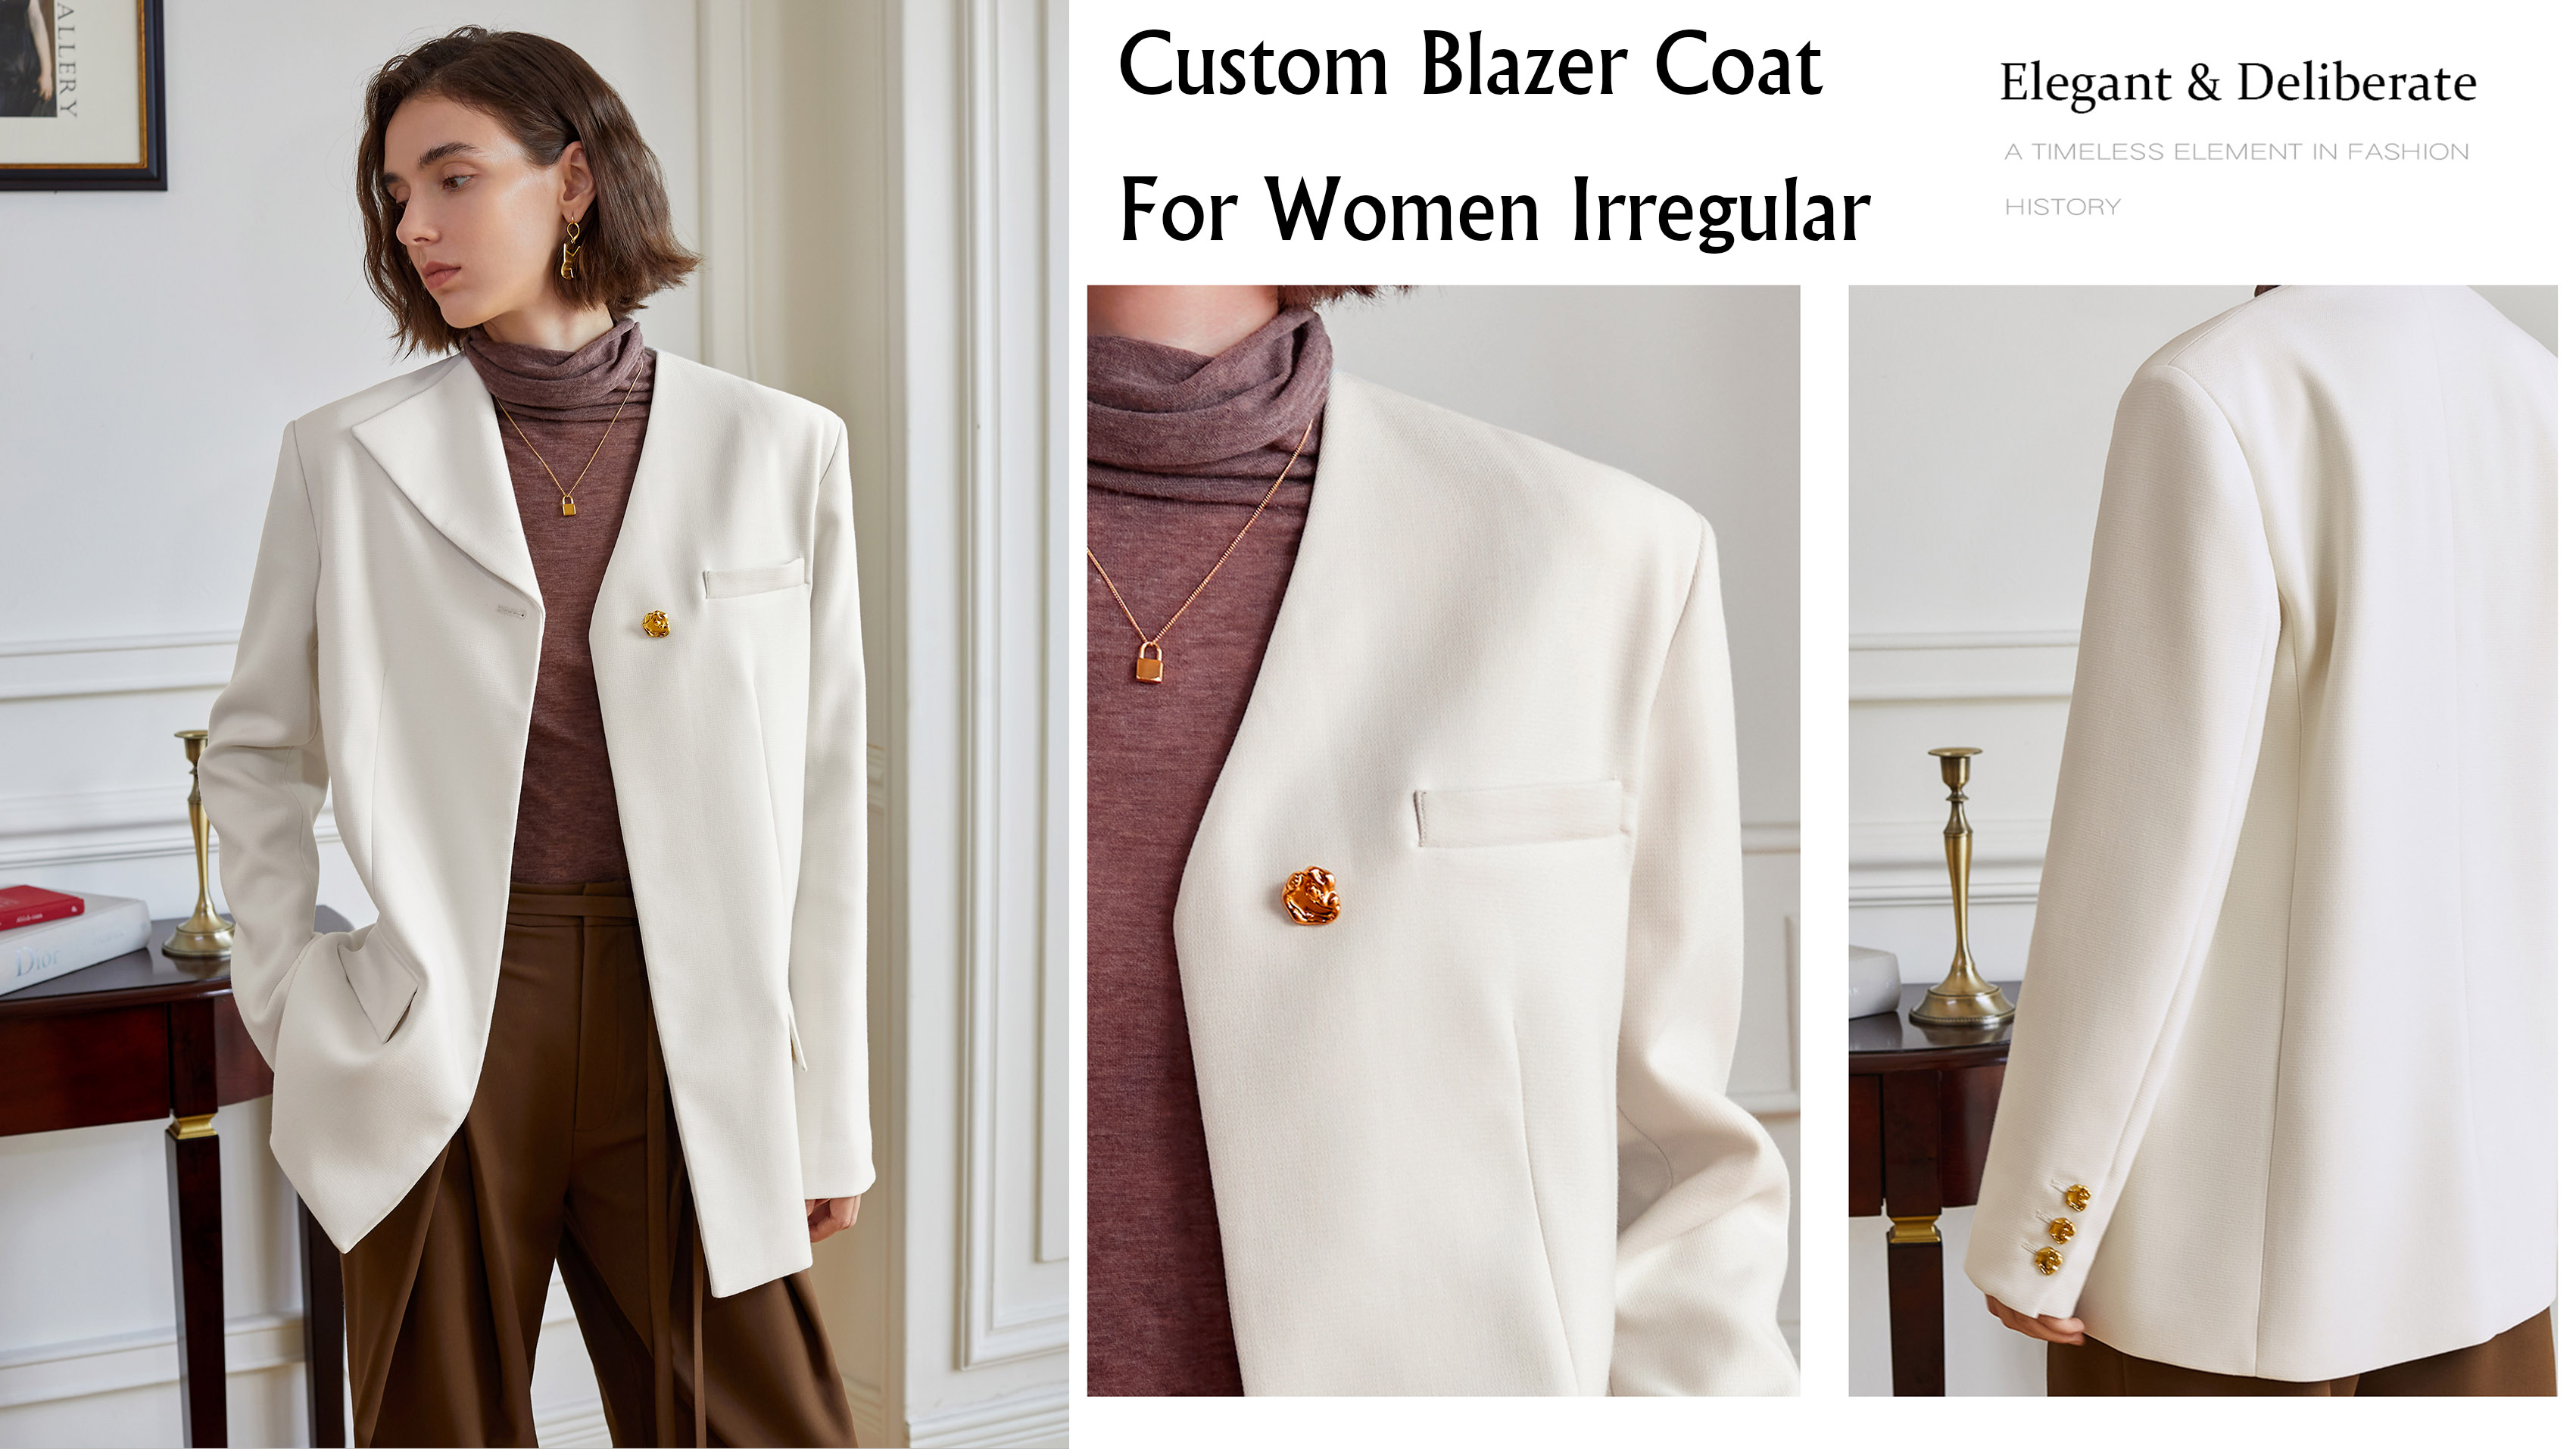 Casaco Blazer Personalizado Para Mulheres Irregulares